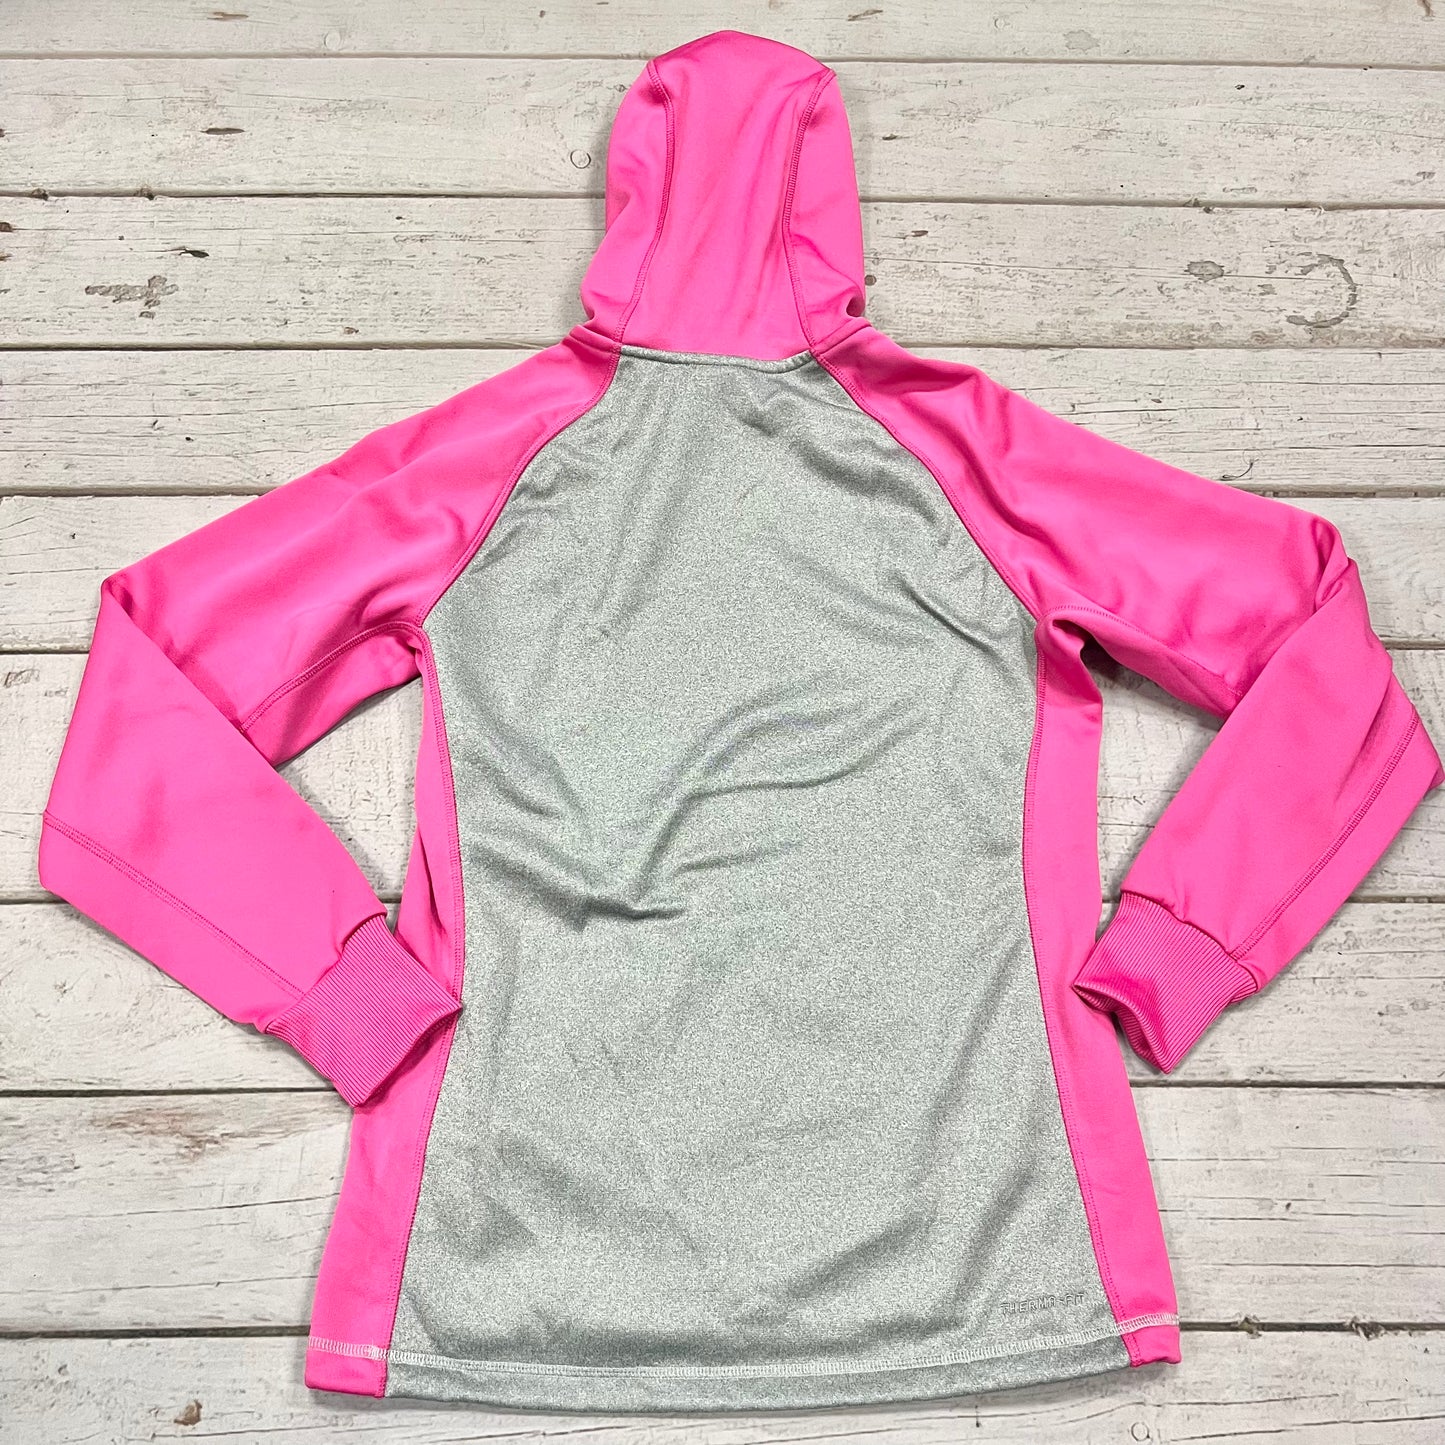 Athletic Sweatshirt Hoodie By Nike  Size: S